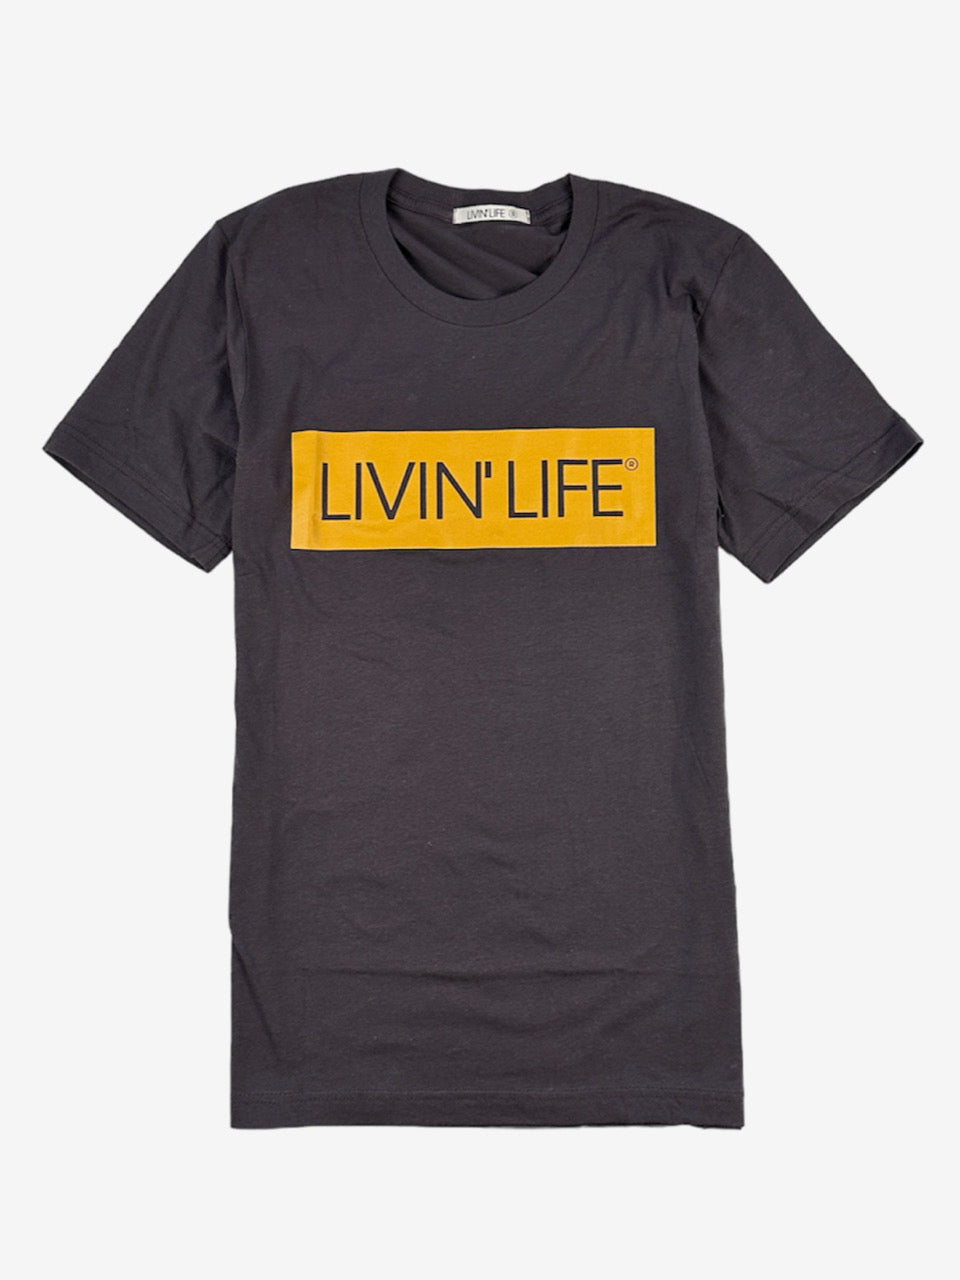 Signature T-Shirt (Dark Brown / Mustard)